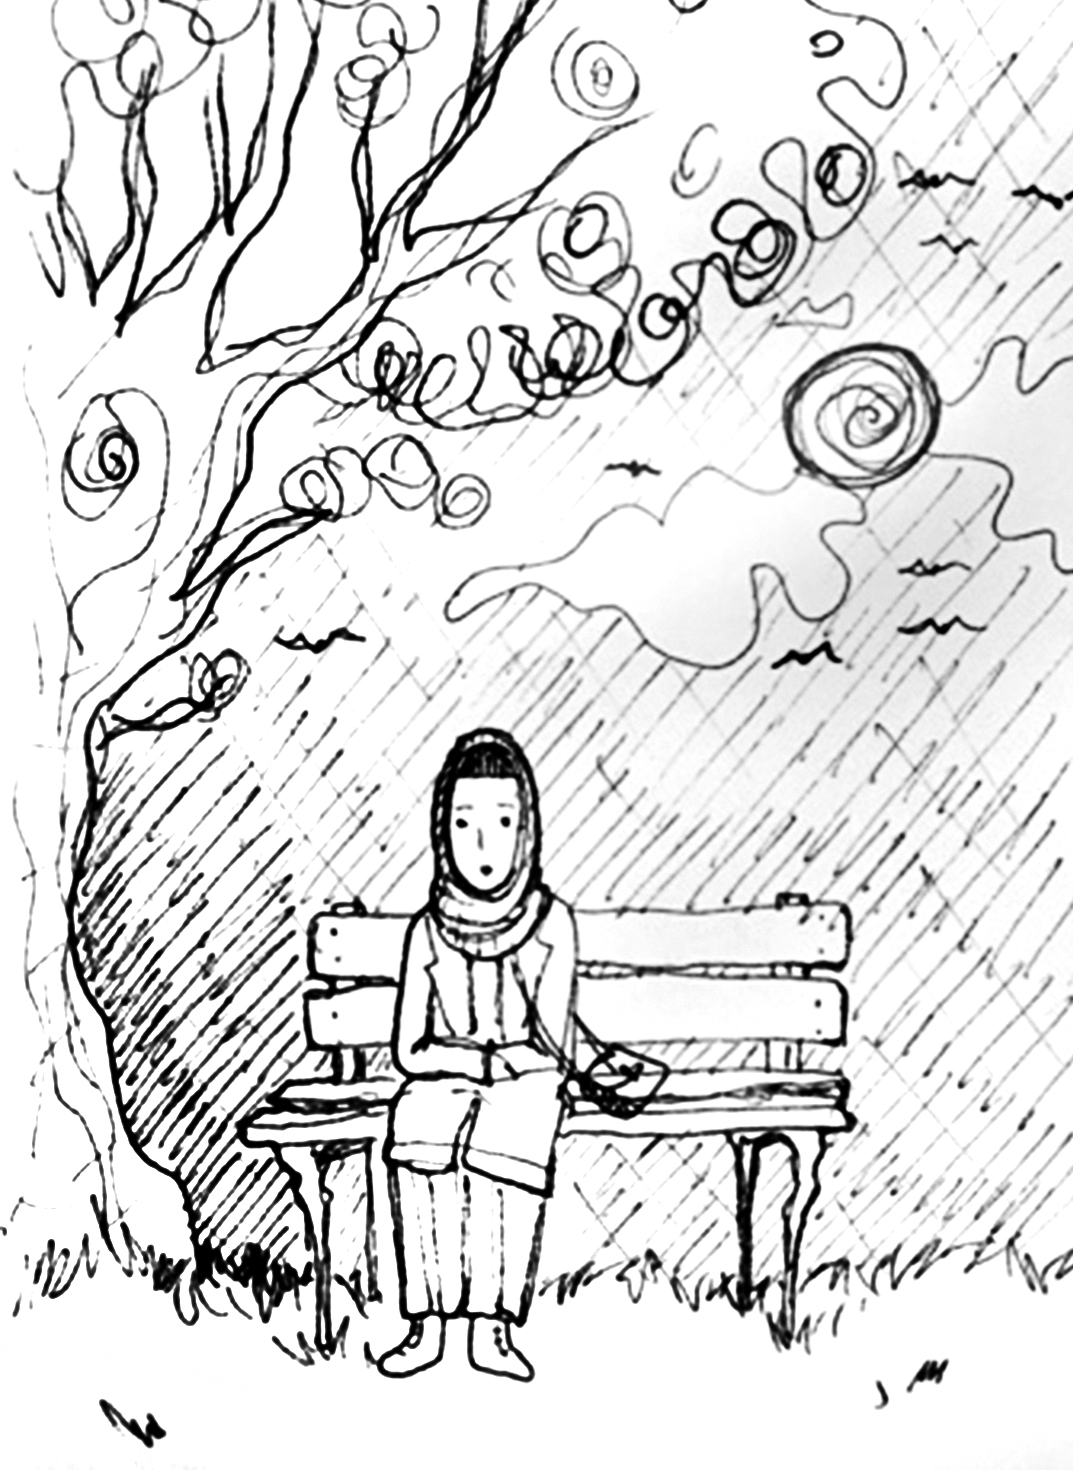 Zeichnung einer Person mit Kopftuch, die mit verschränkten Armen auf einer Parkbank sitzt.